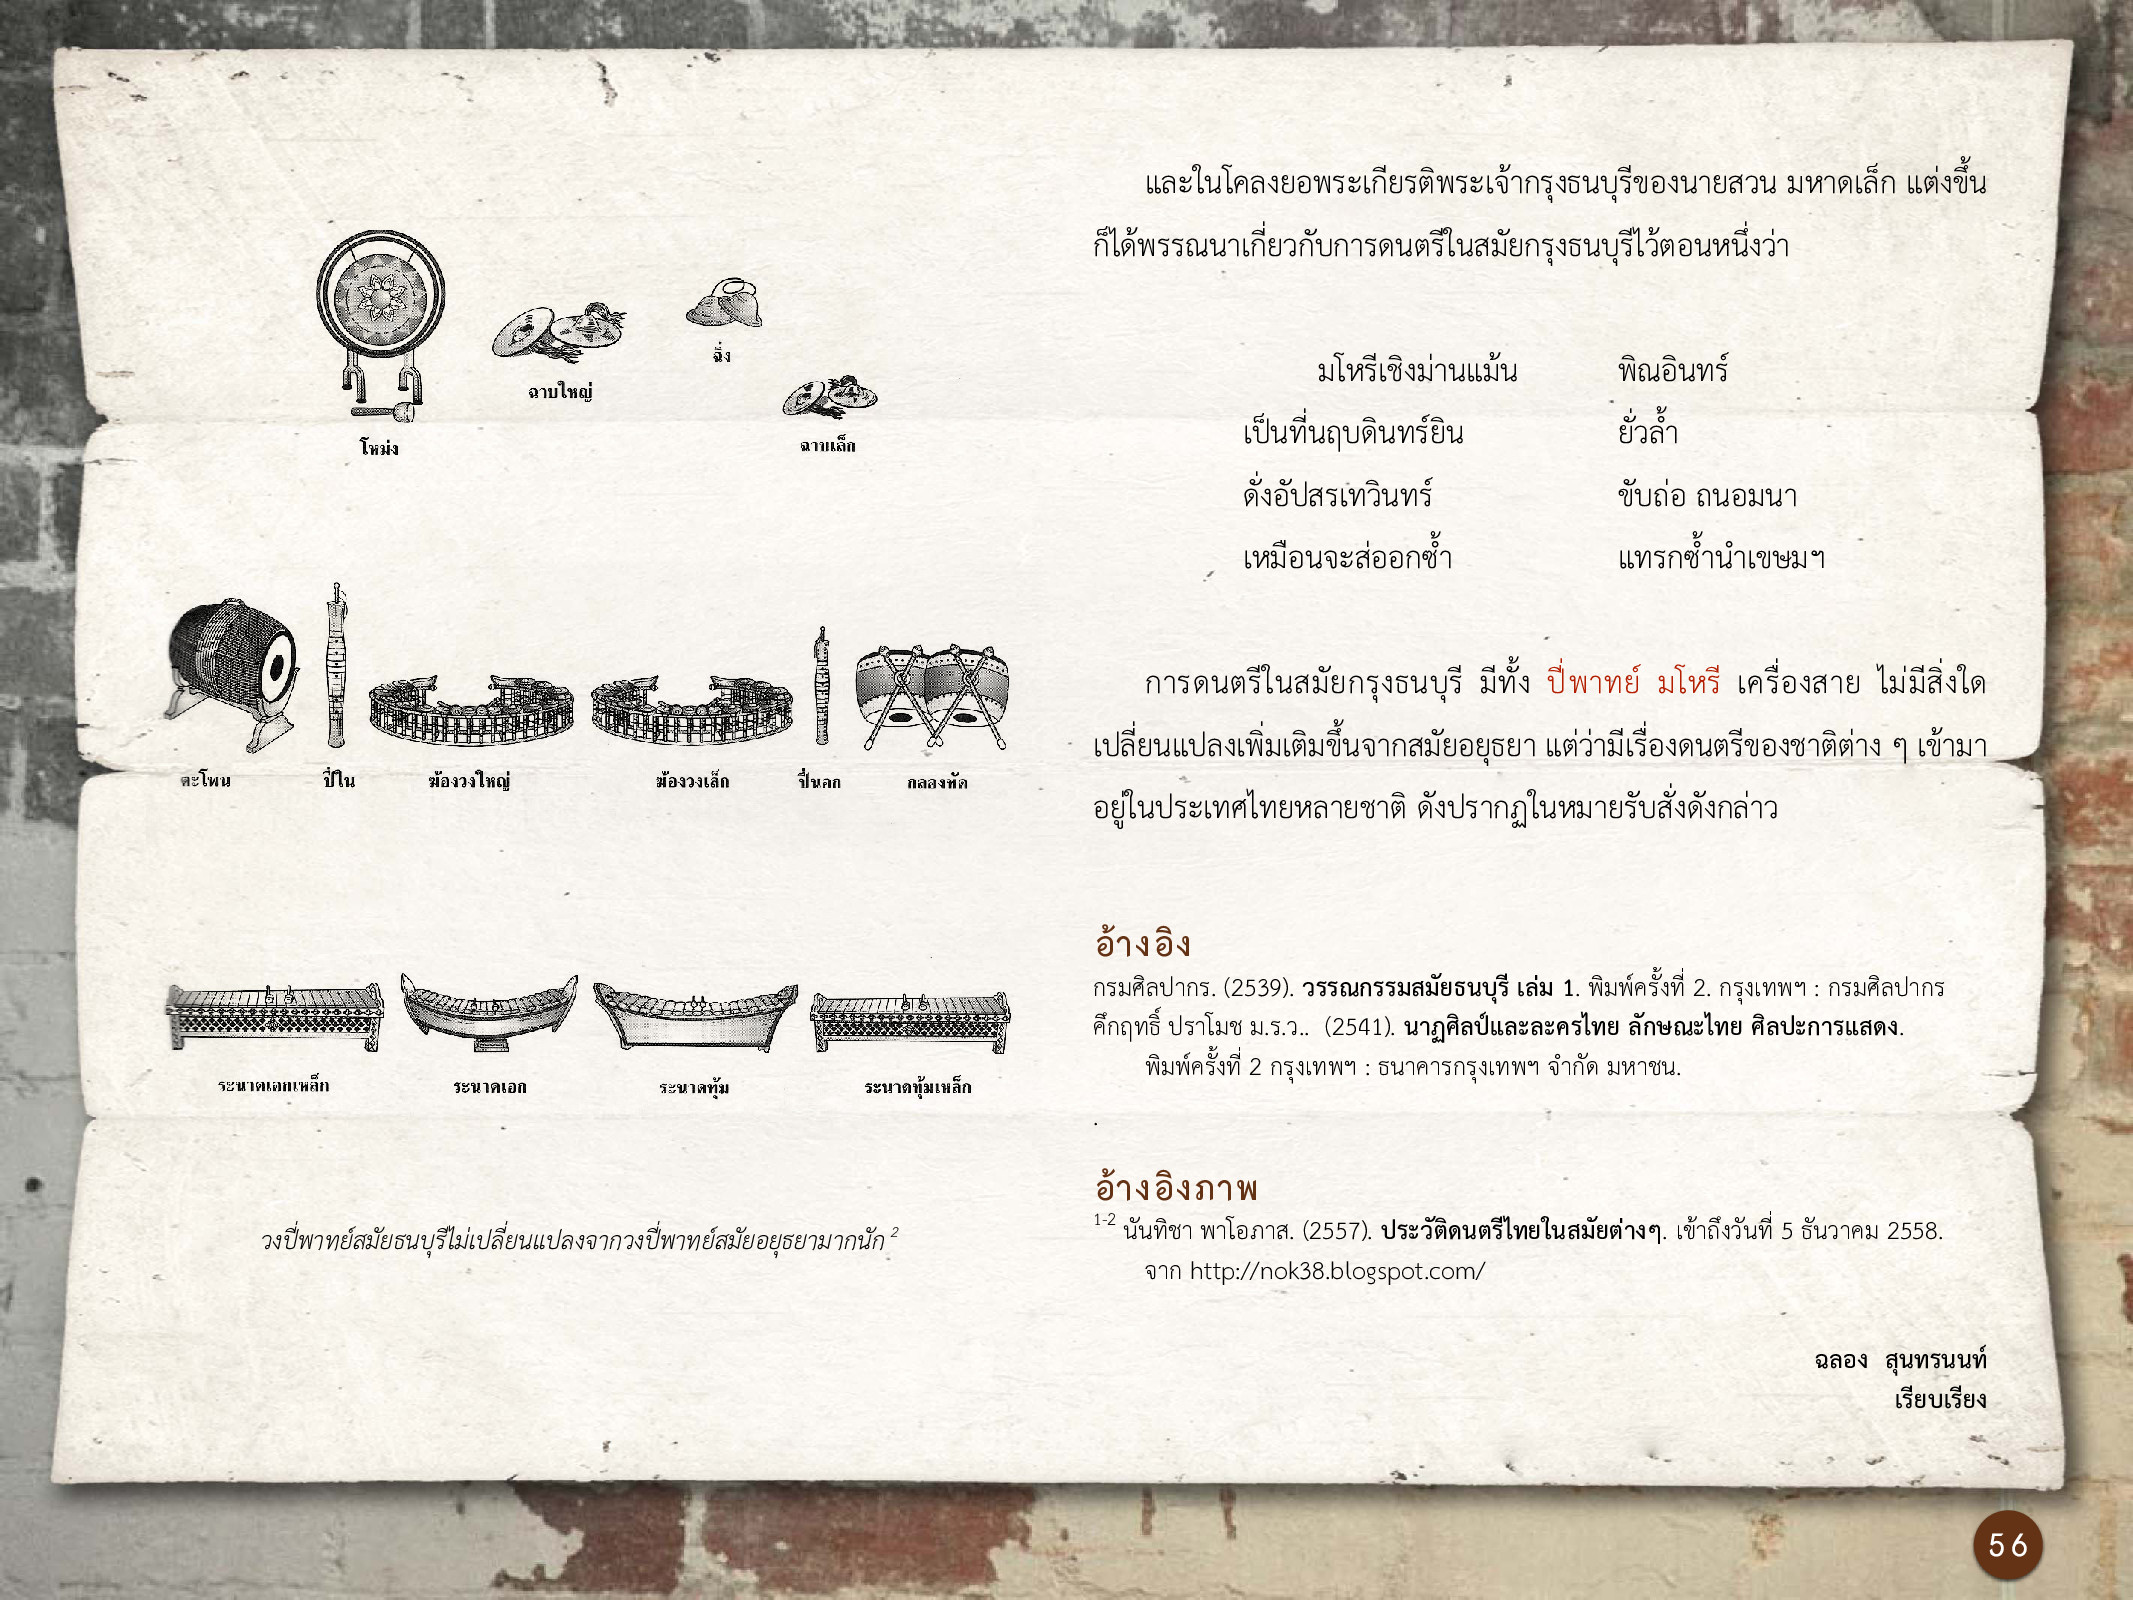 ศิลปกรรมกรุงธนบุรี ./images/encyclopedia/56.jpg